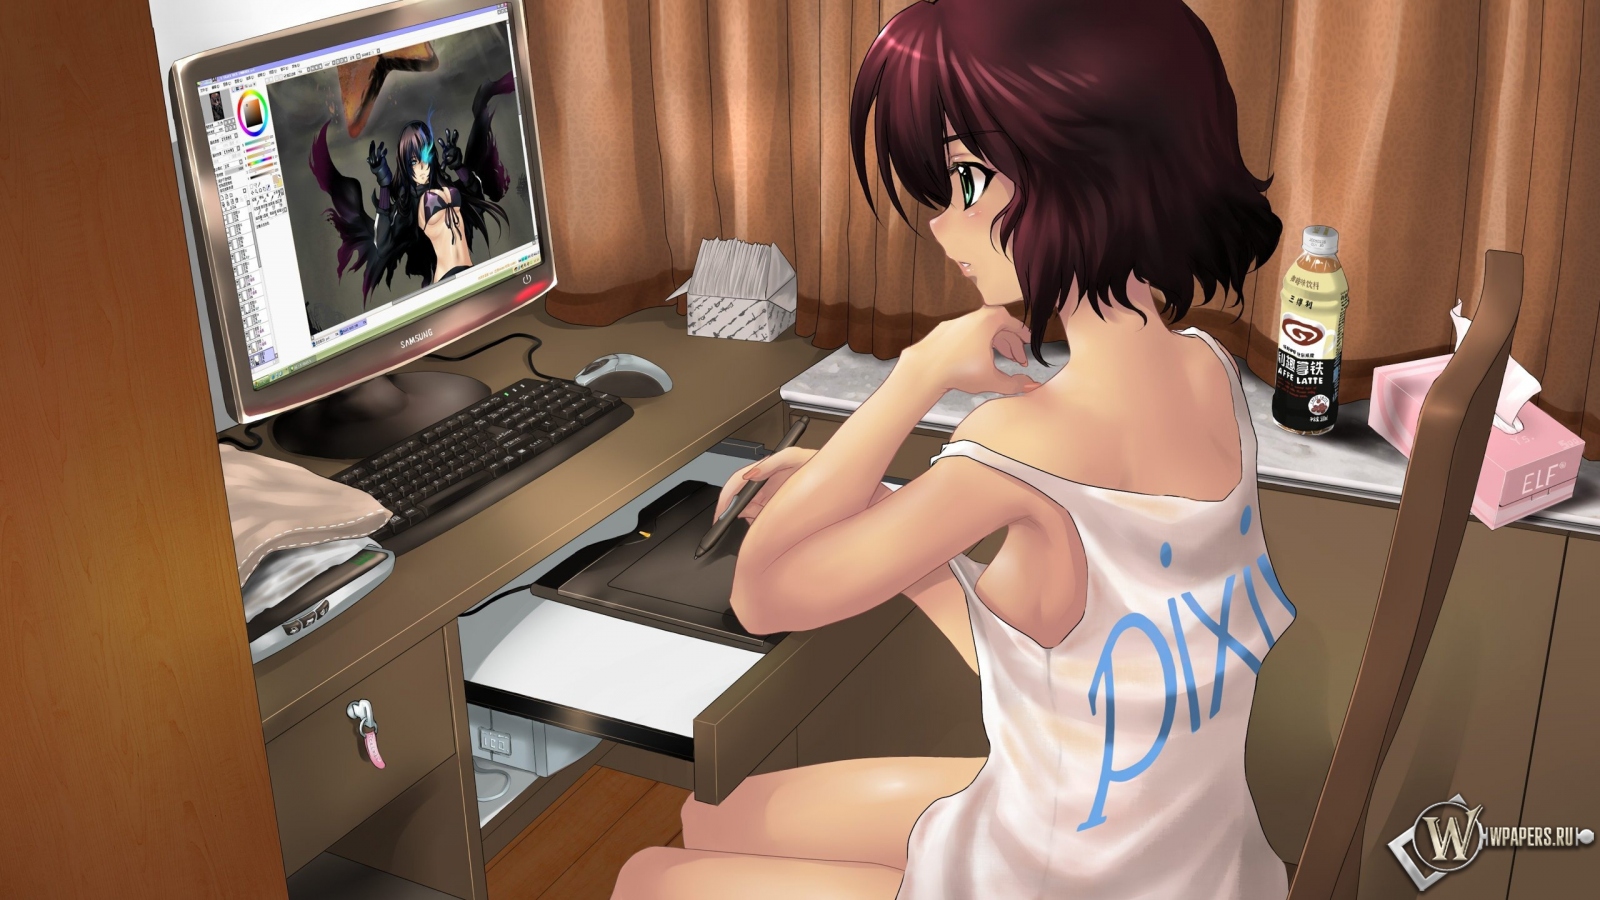 Девушка рисует за компьютером 1600x900